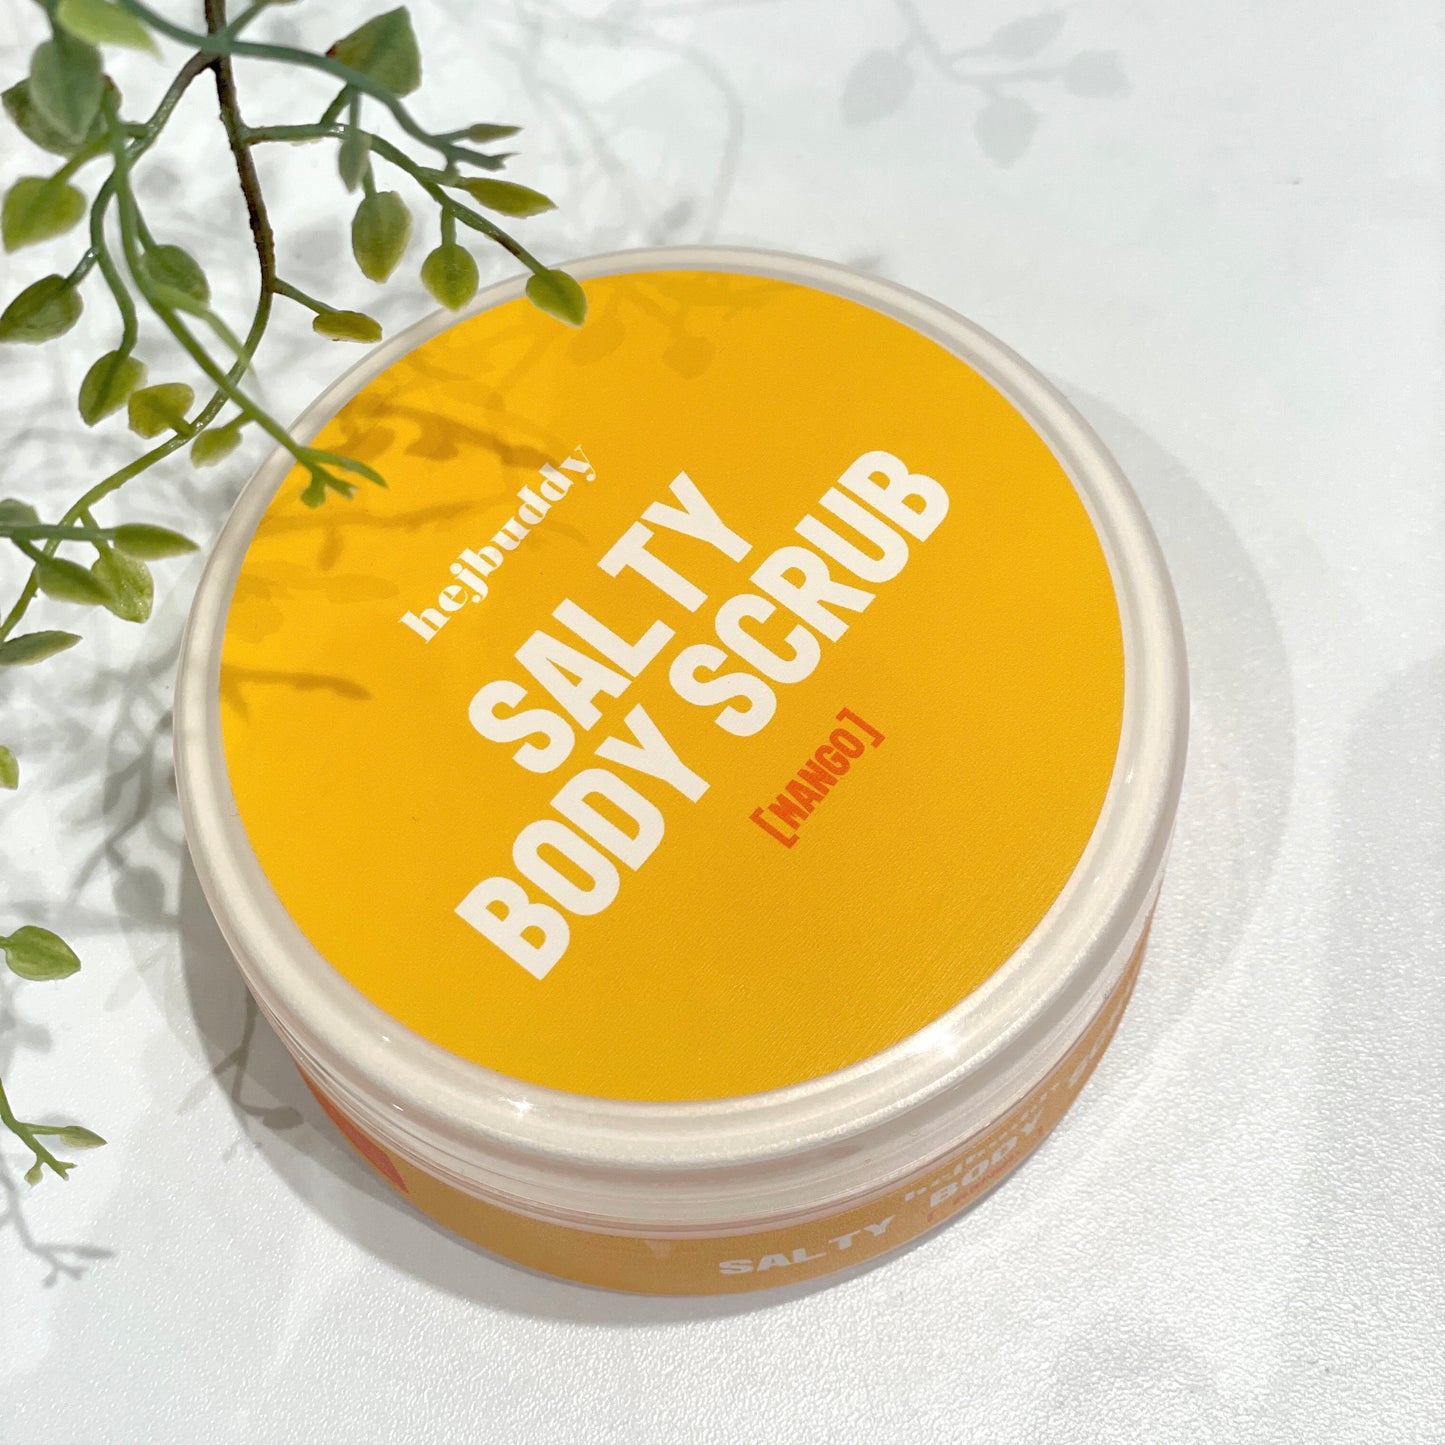 Salty Body Scrub [Mango] - oil-based salt scrub for the body